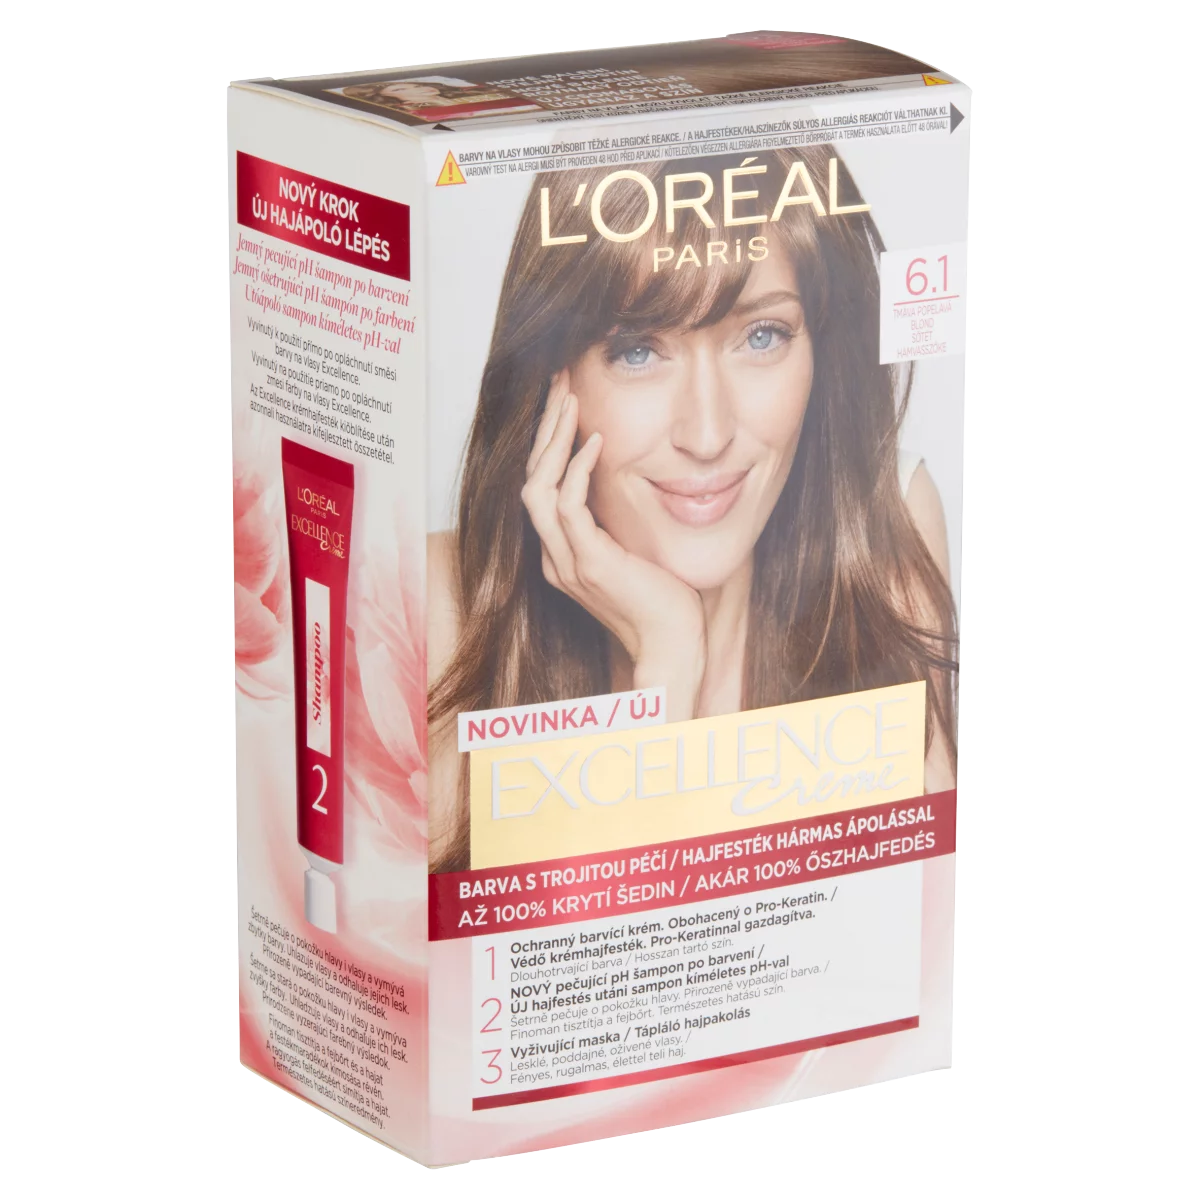 L'Oréal Paris Excellence Creme 6.1 Sötét hamvasszőke hajfesték hármas ápolással